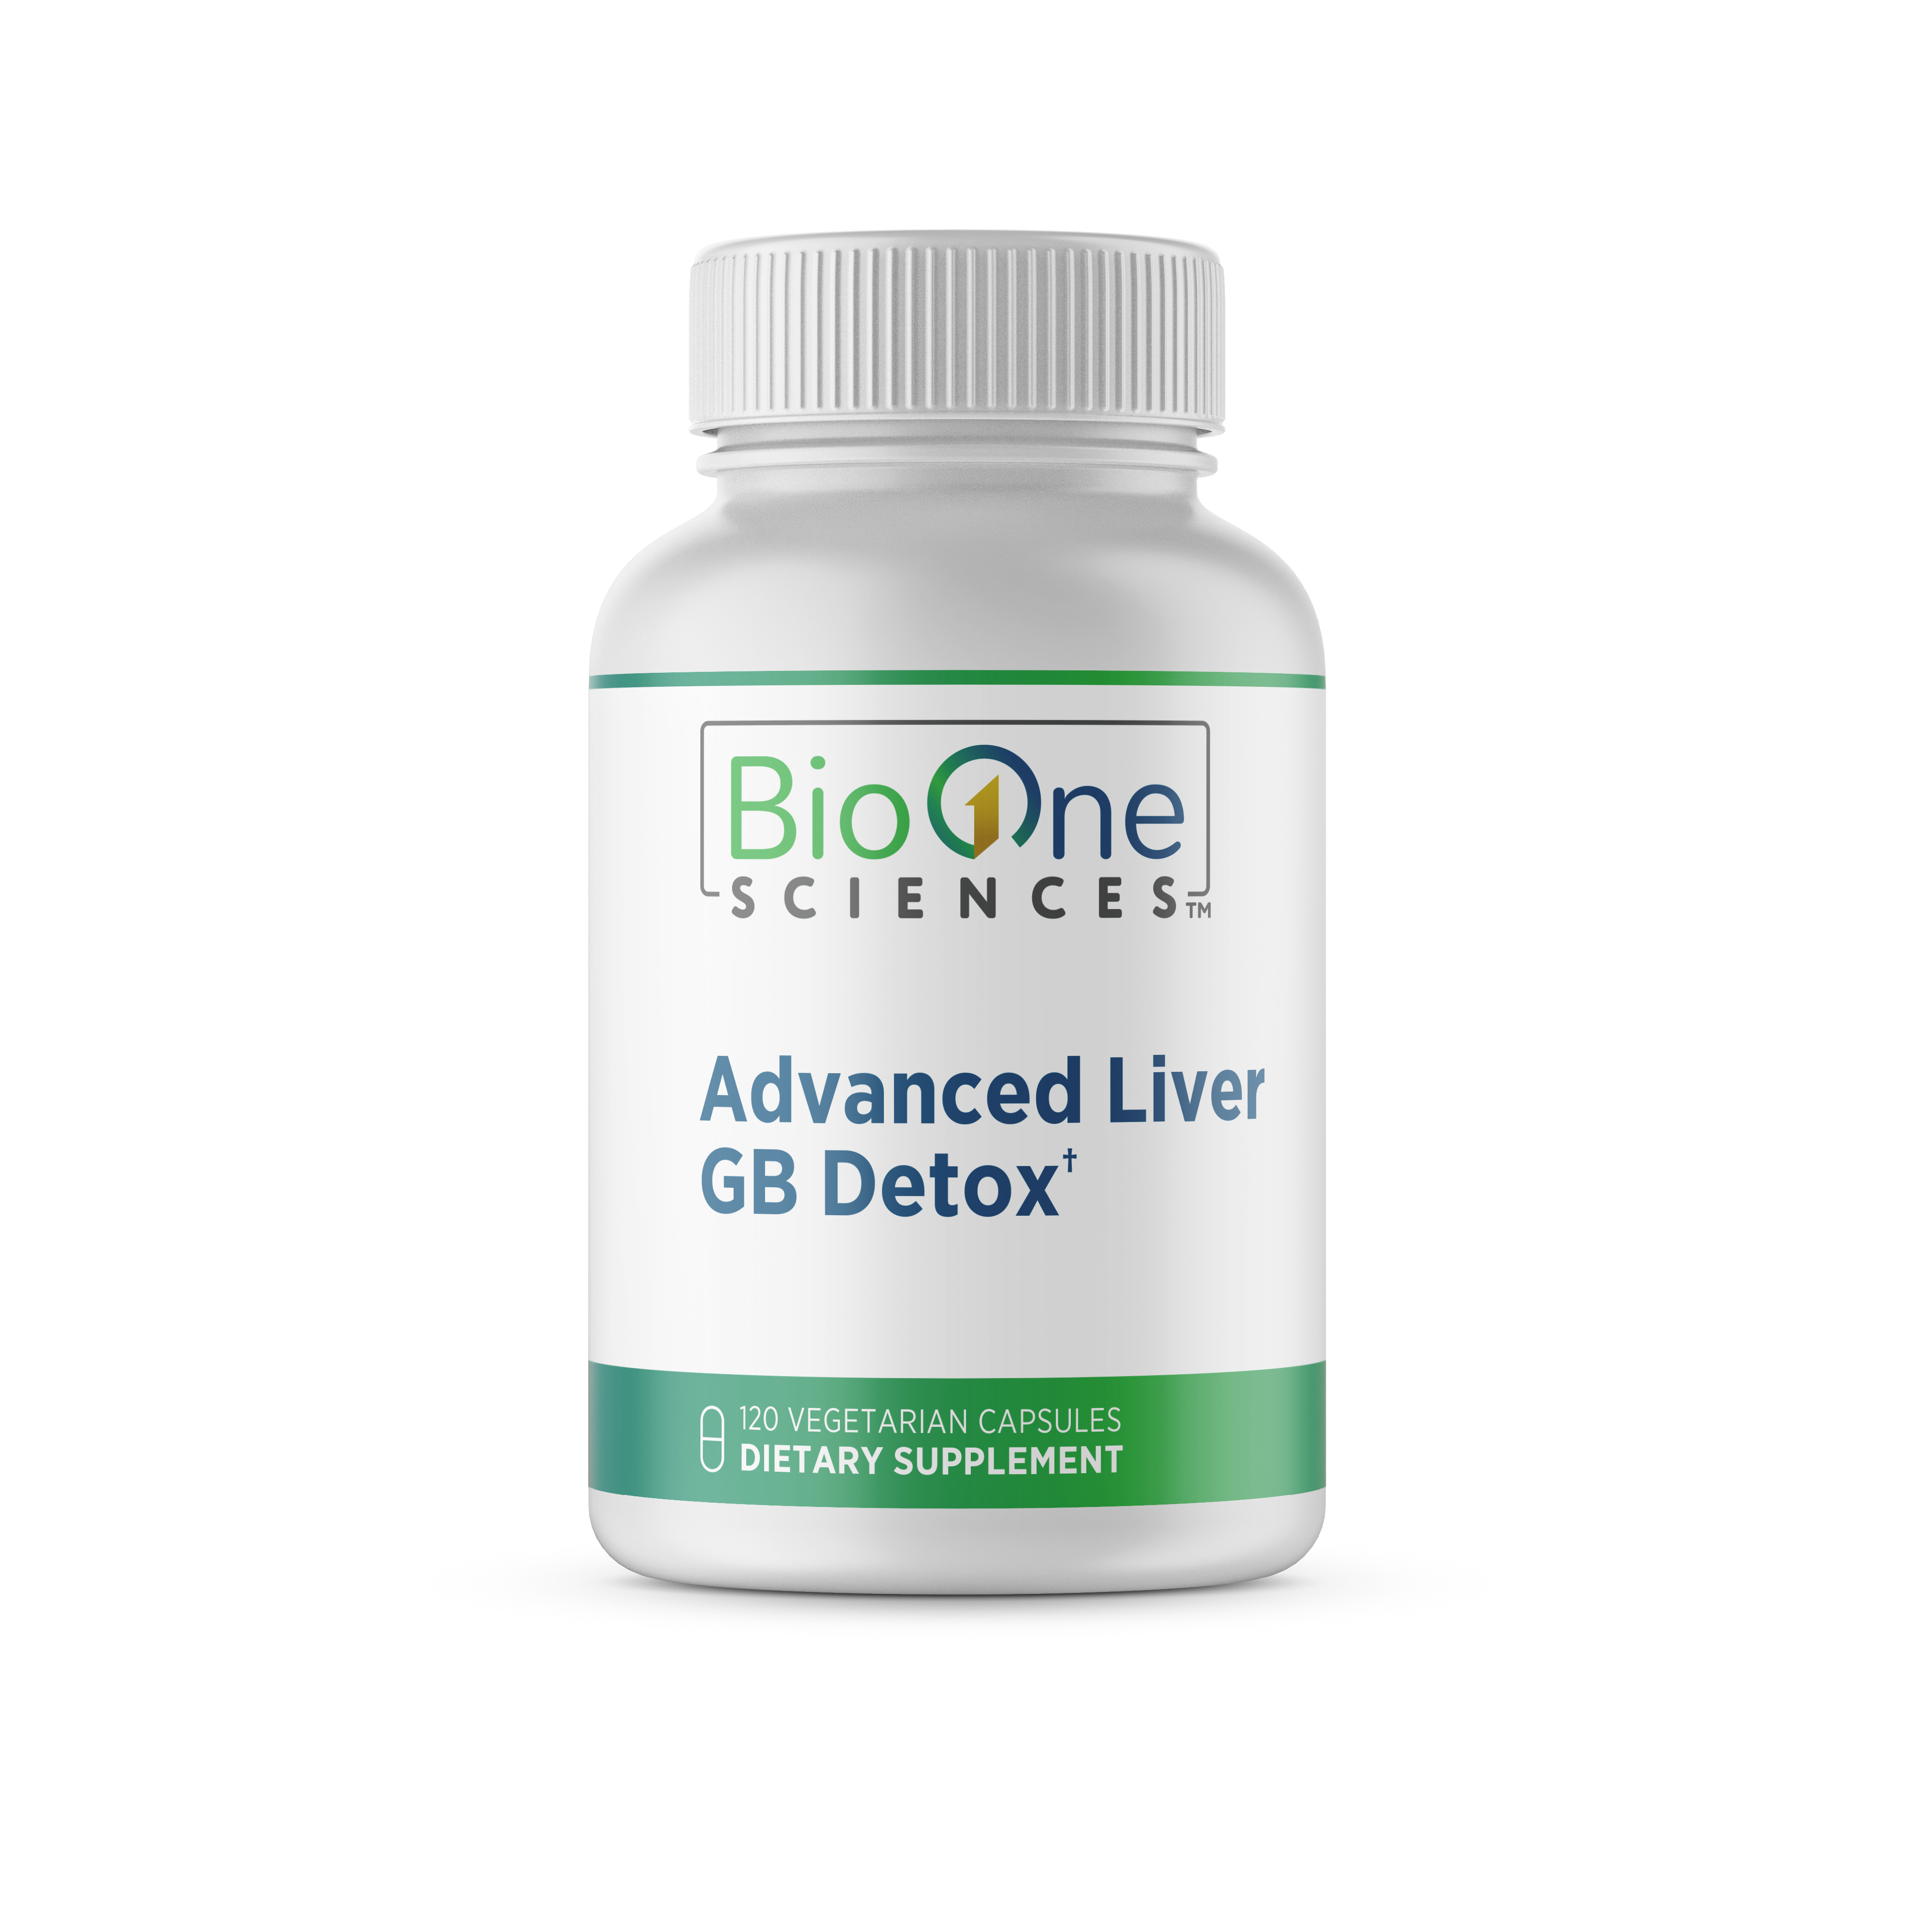 Advanced Liver GB Detox